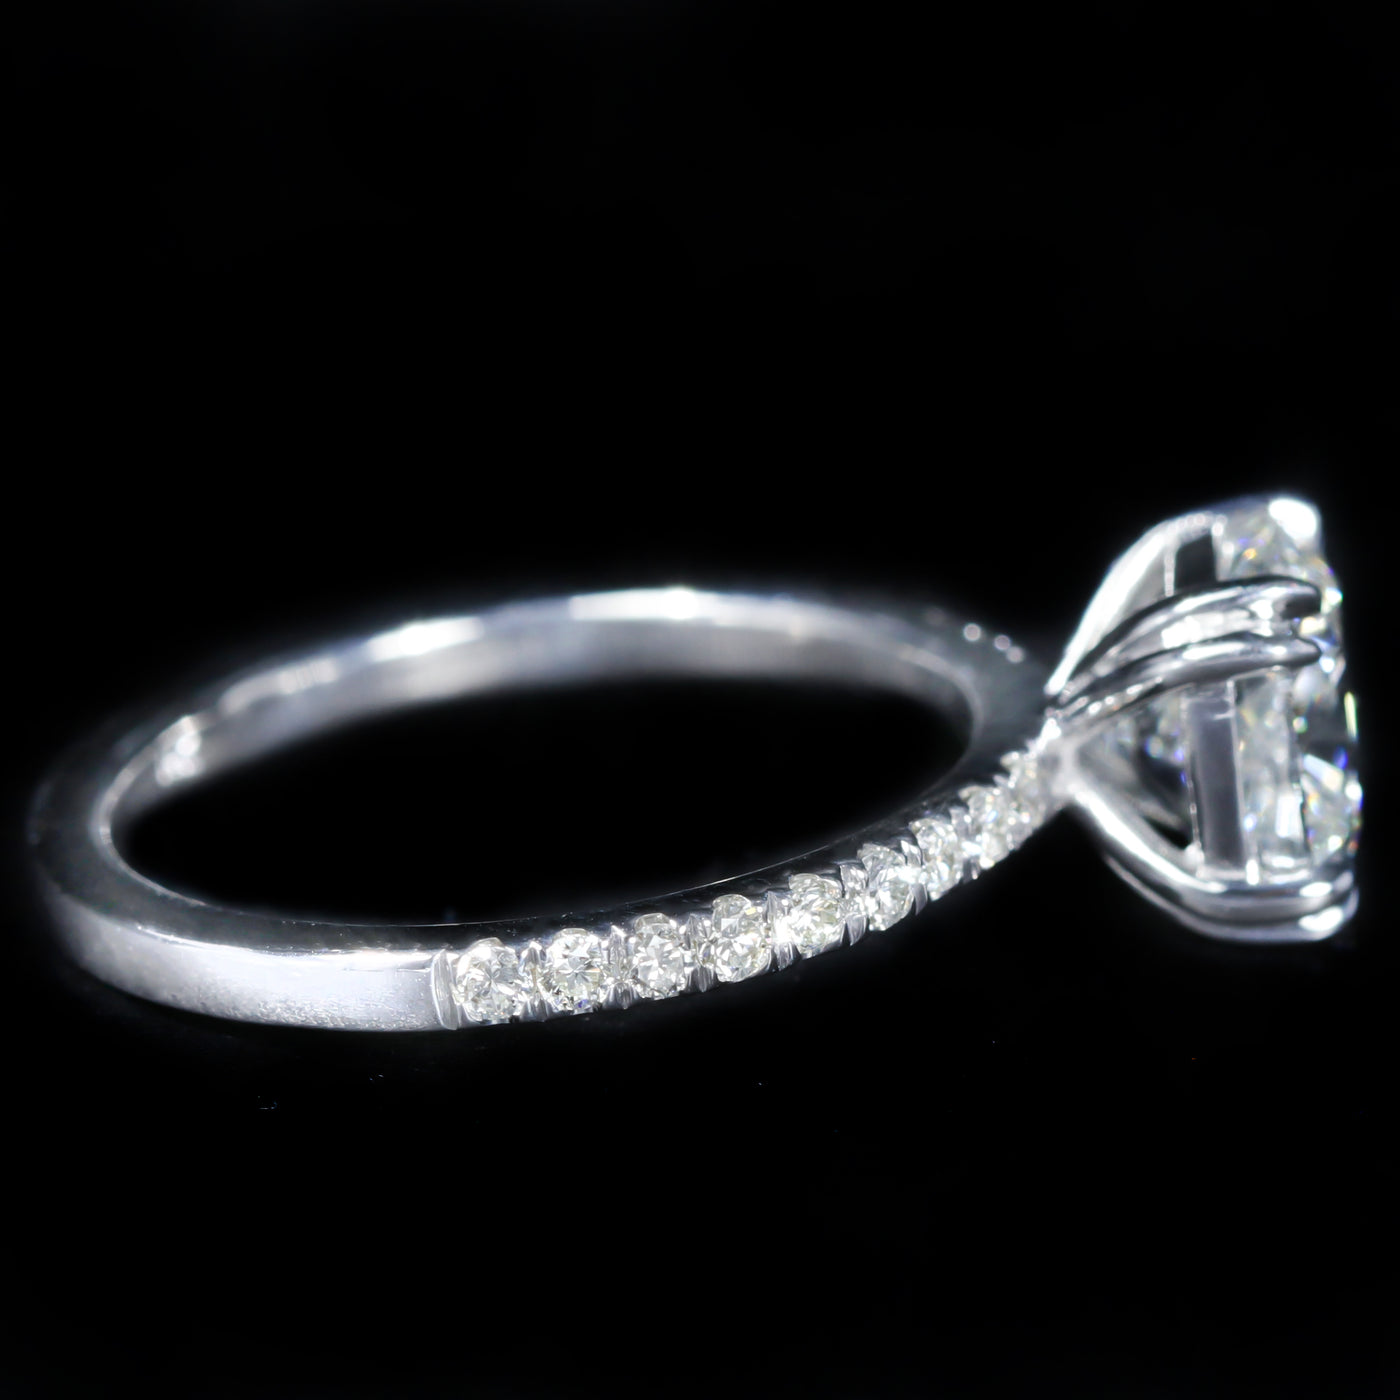 14K White Gold GIA 2.01 Carat Cushion Cut Diamond Engagement Ring